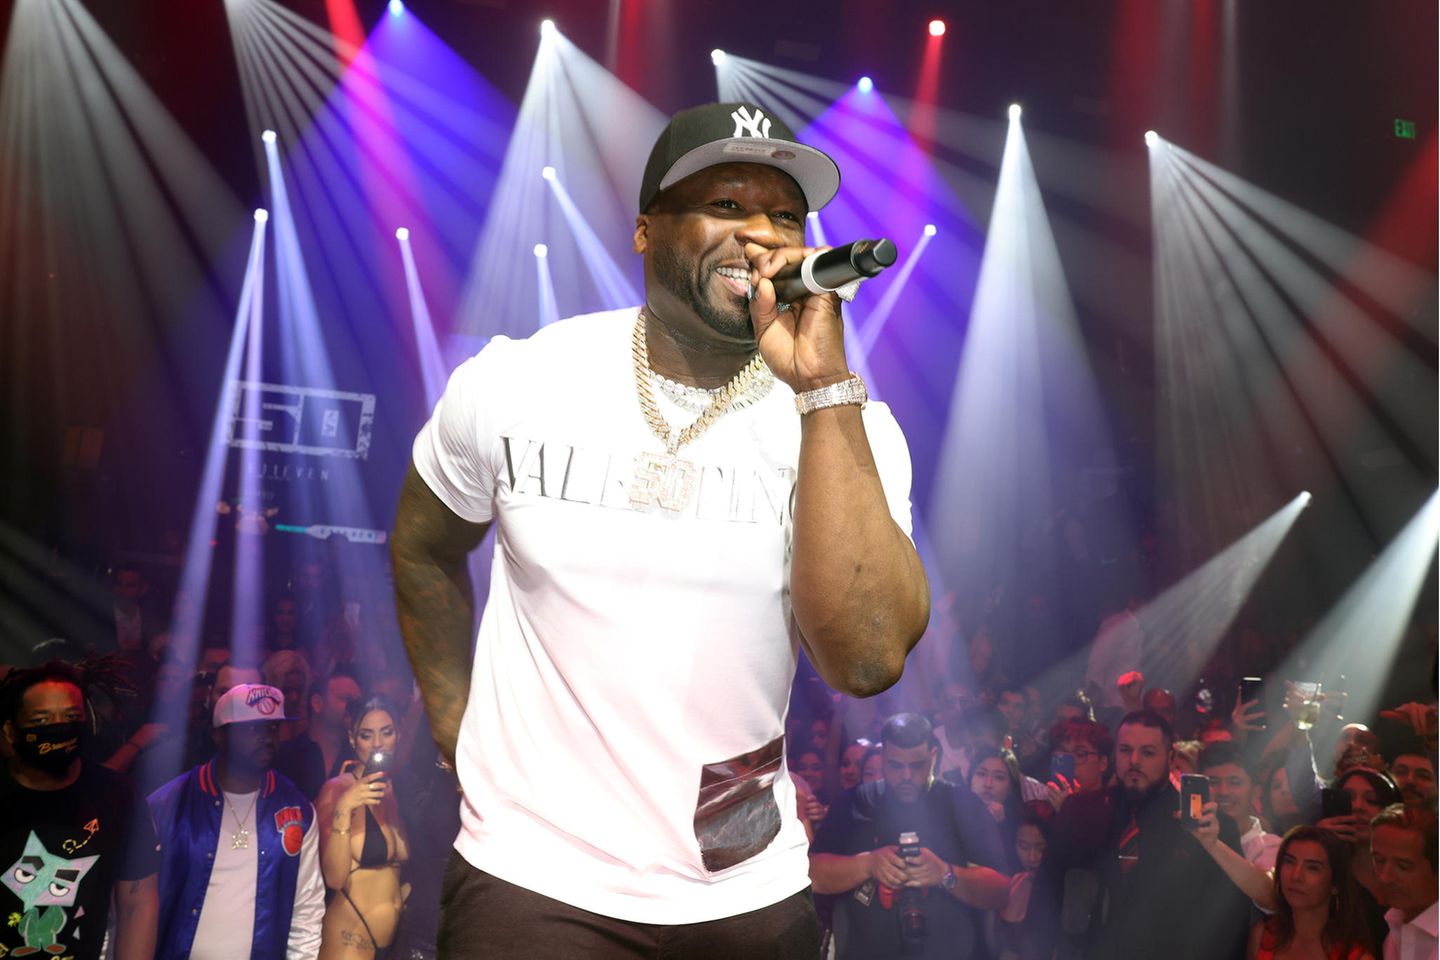 Rapper 50 Cent sing bei einem Auftritt auf der Bühne